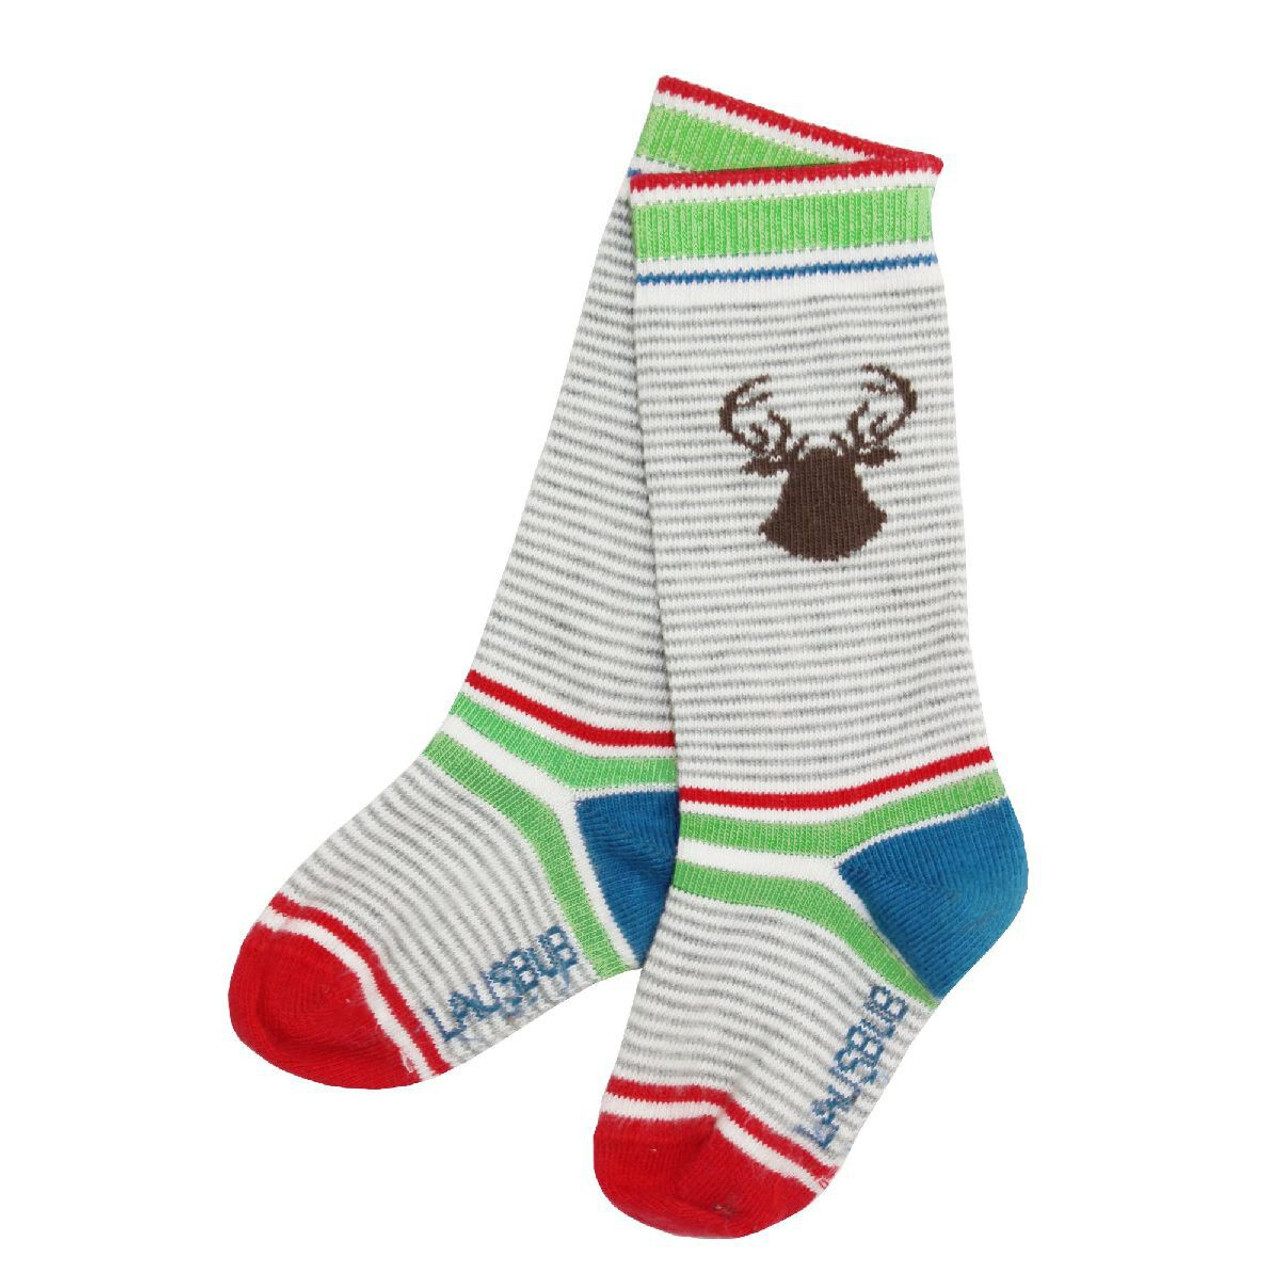 toddler grey socks